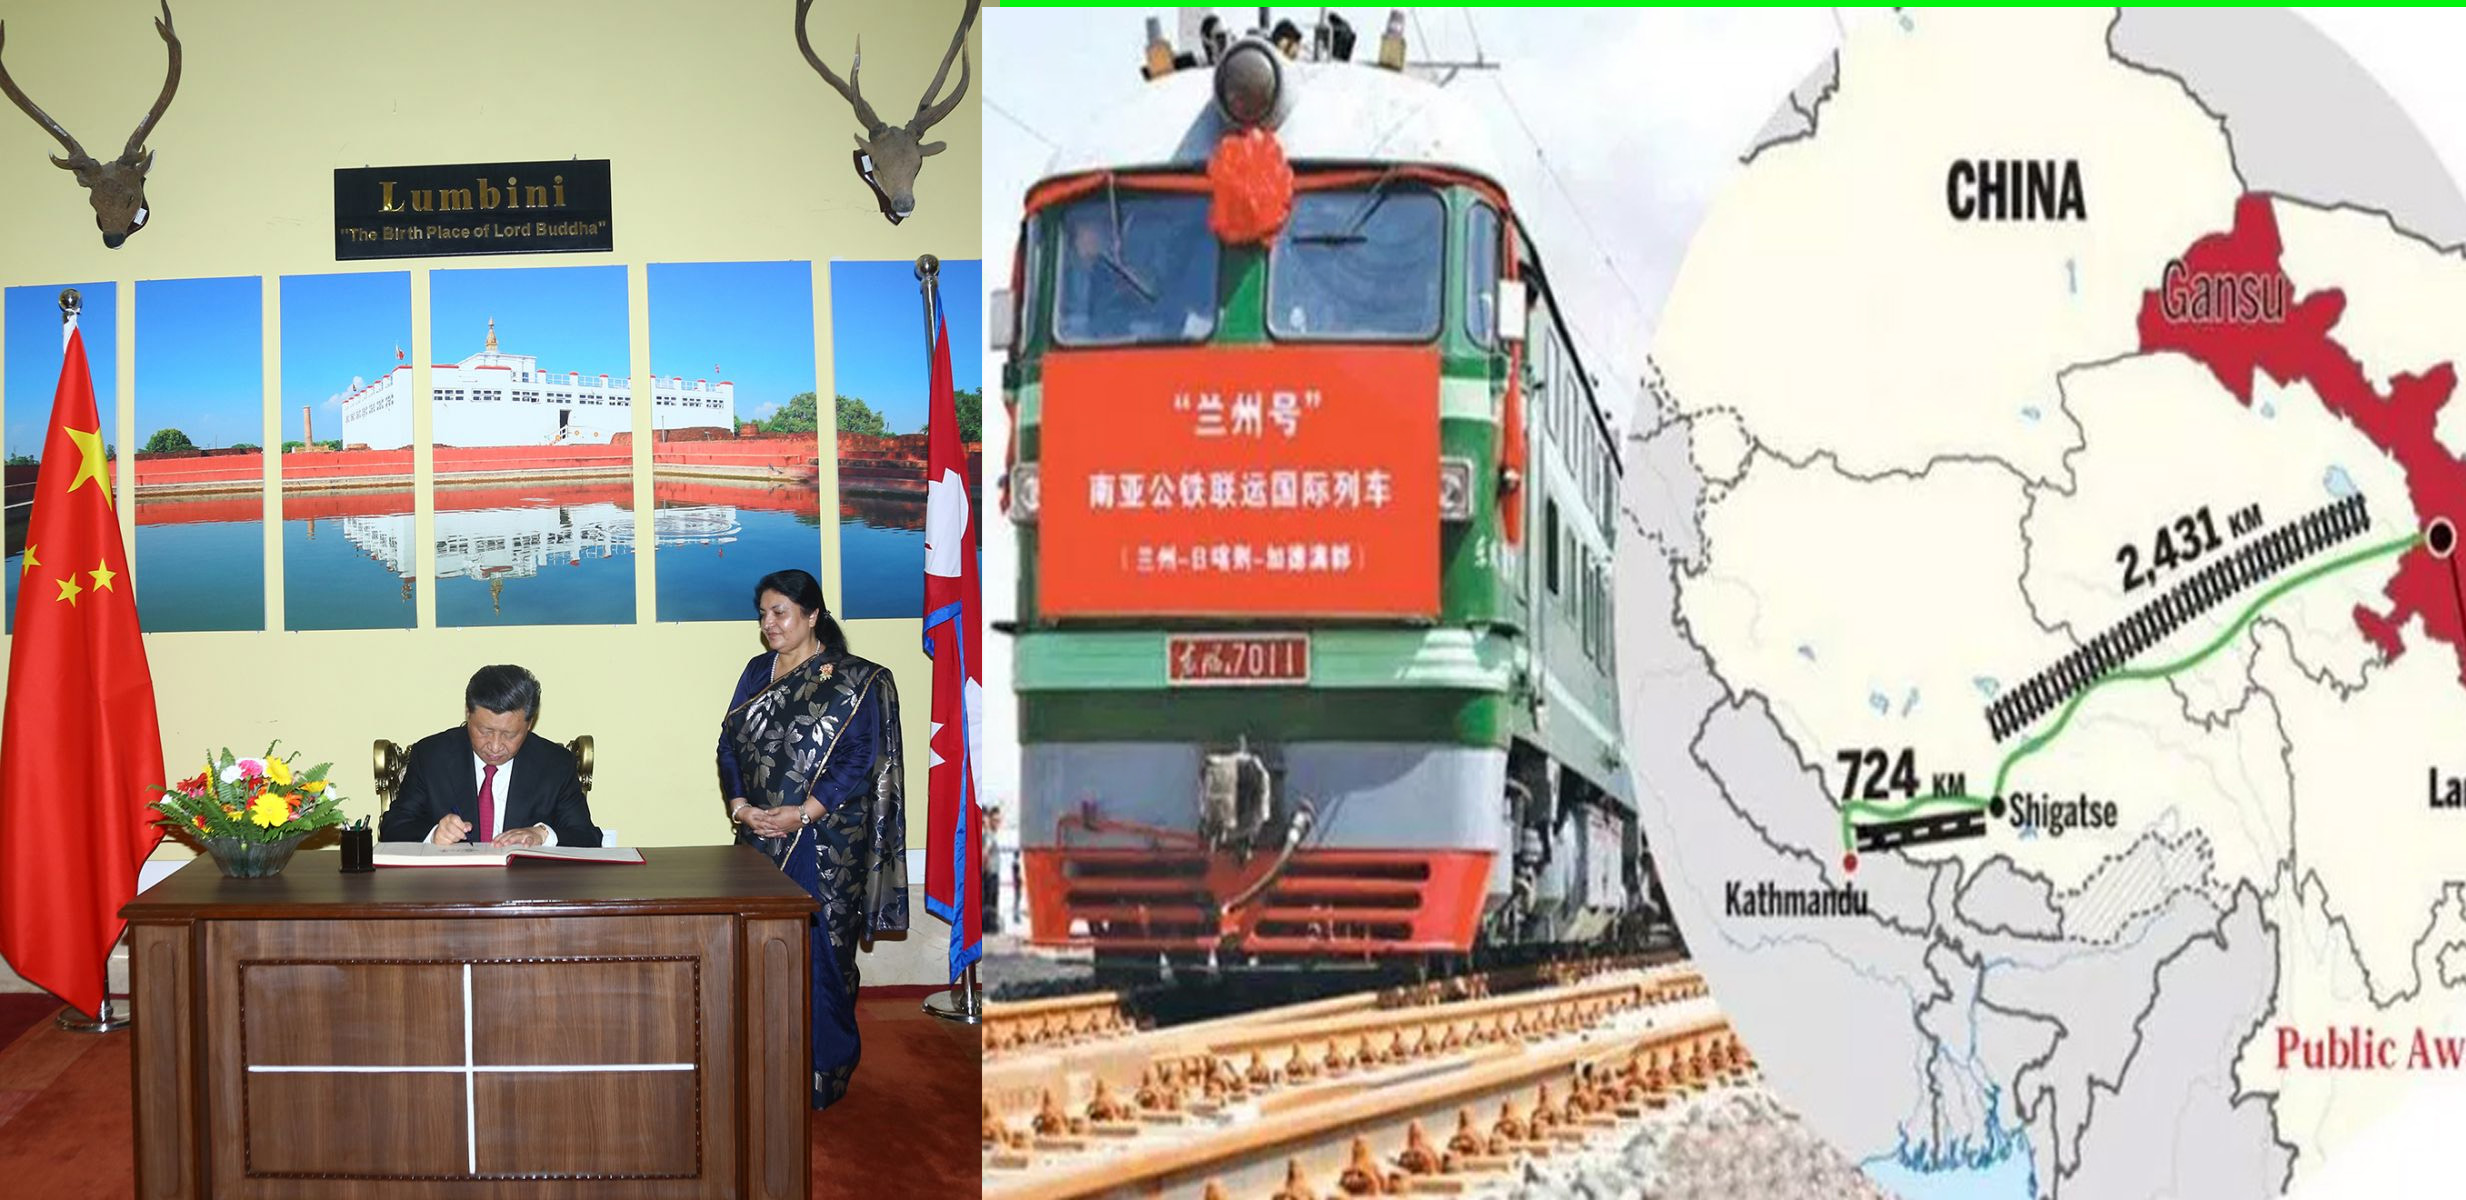 केरुङ–काठमाडौं रेलमार्ग निर्माण गर्ने चिनियाँ राष्ट्रपति सीको प्रतिबद्धता